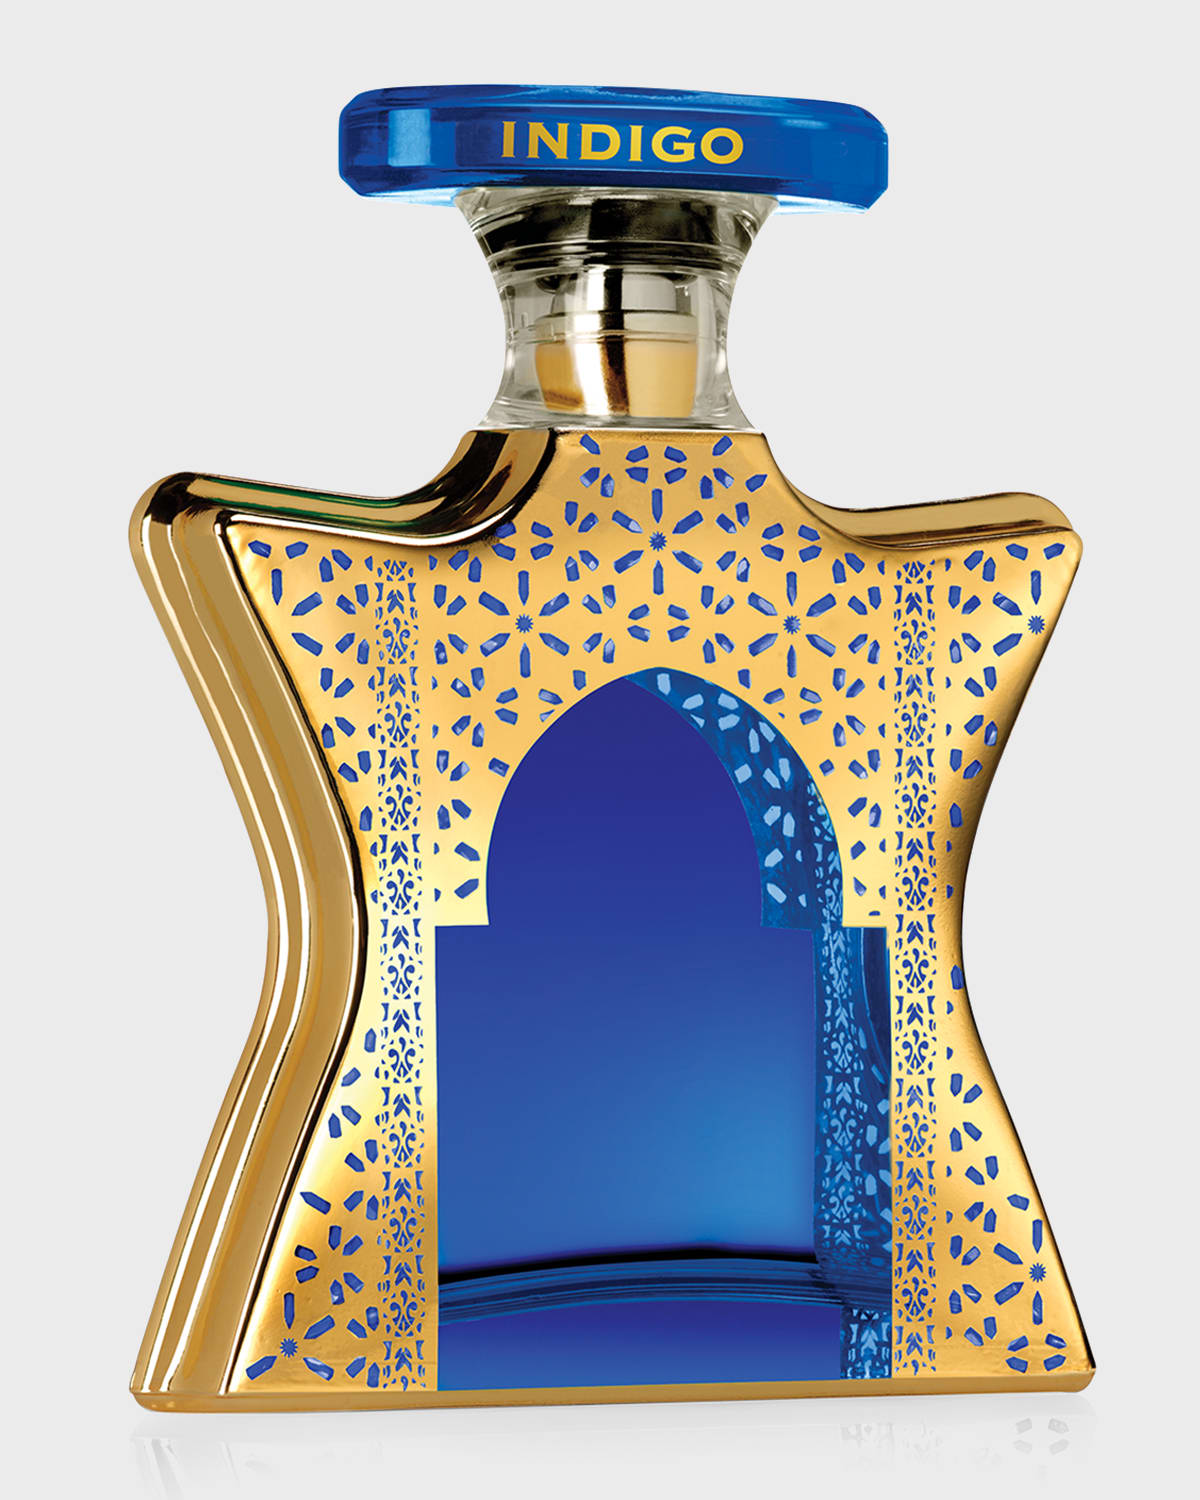 Bond No.9 New York Dubai Indigo Eau de Parfum, 3.4 oz.